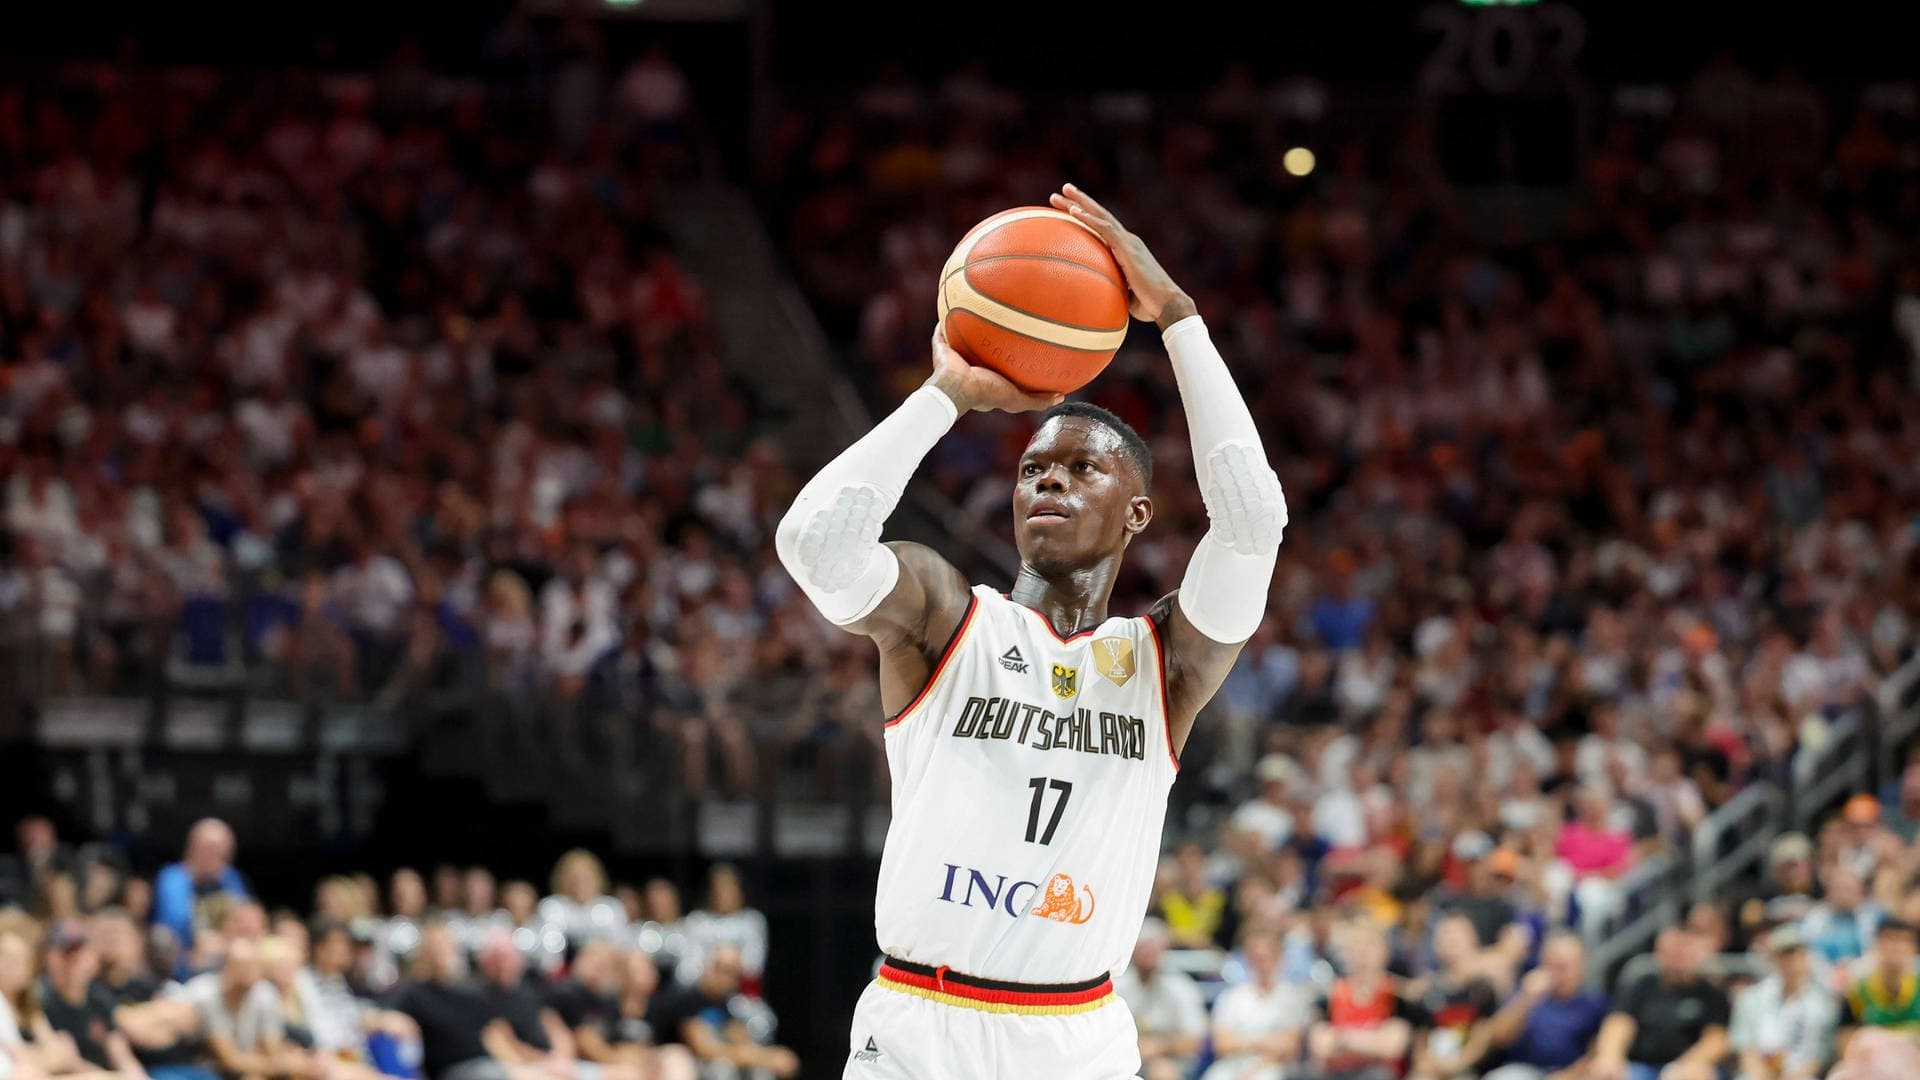 Medien: Basketballer Schröder trägt deutsche Fahne bei Olympia-Eröffnungsfeier in Paris